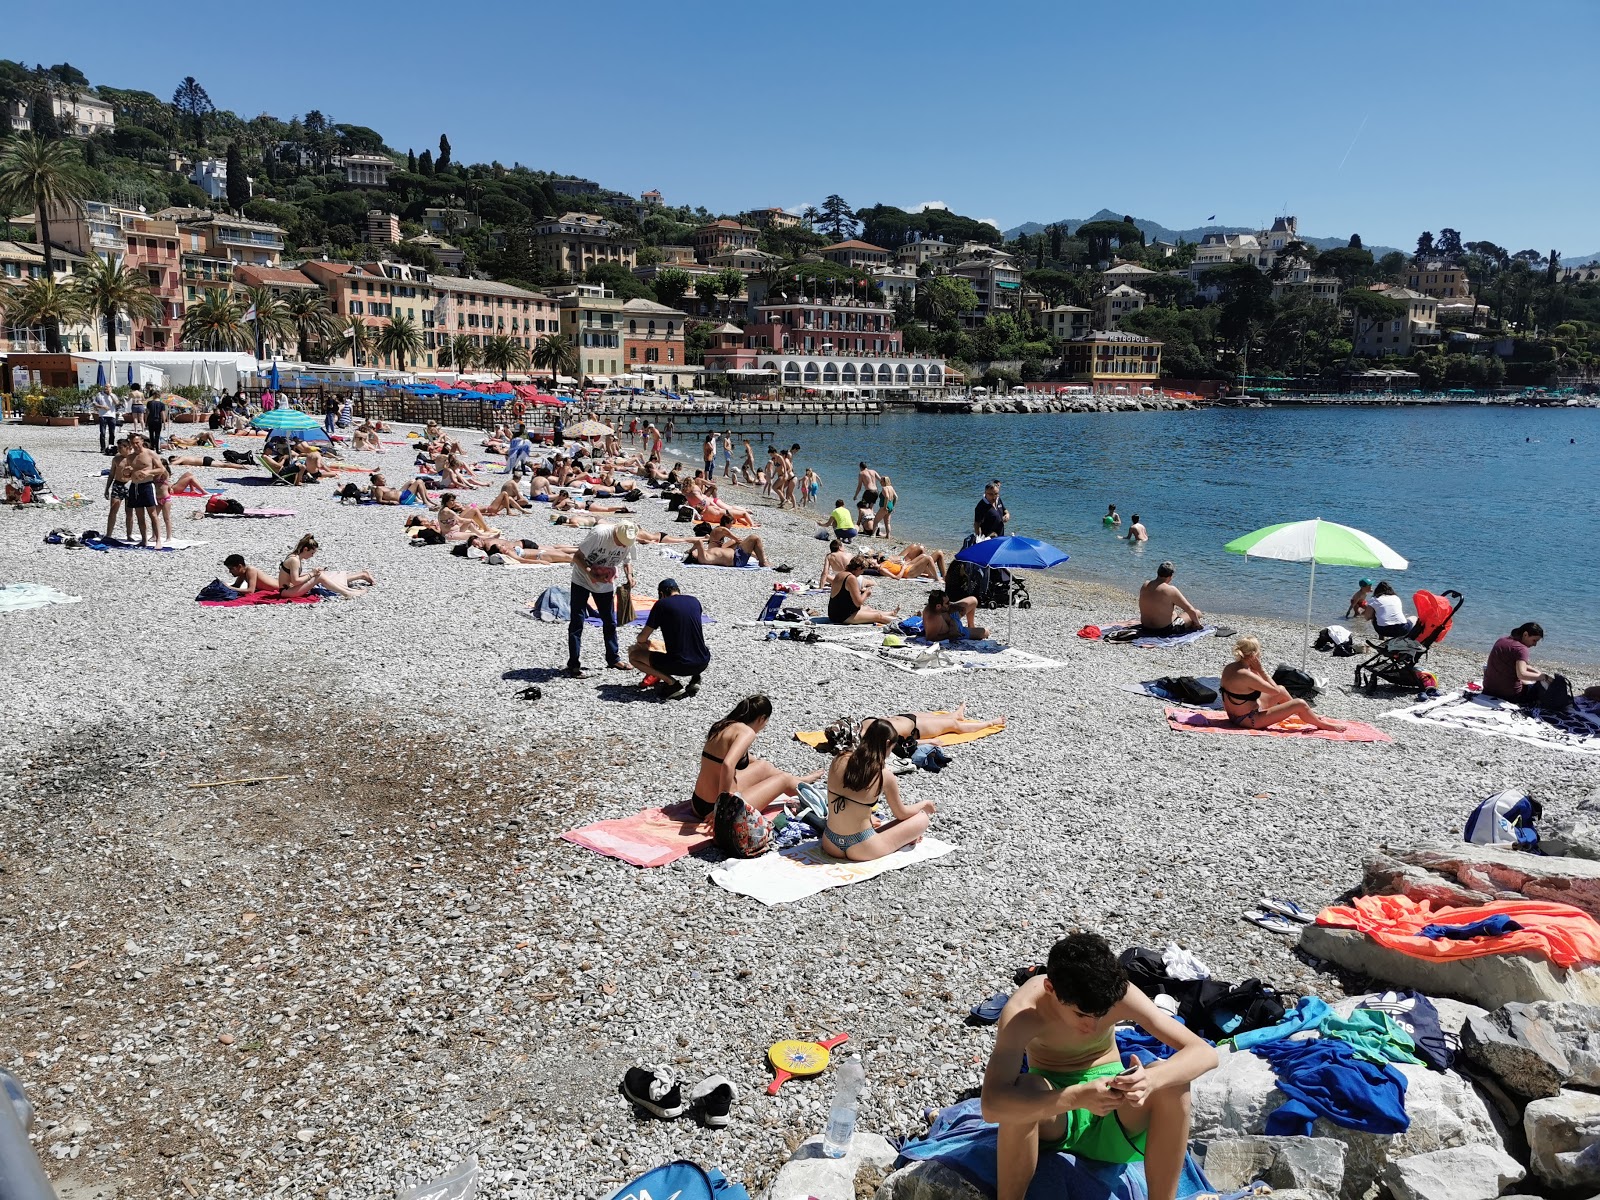 Santa Margherita'in fotoğrafı plaj tatil beldesi alanı